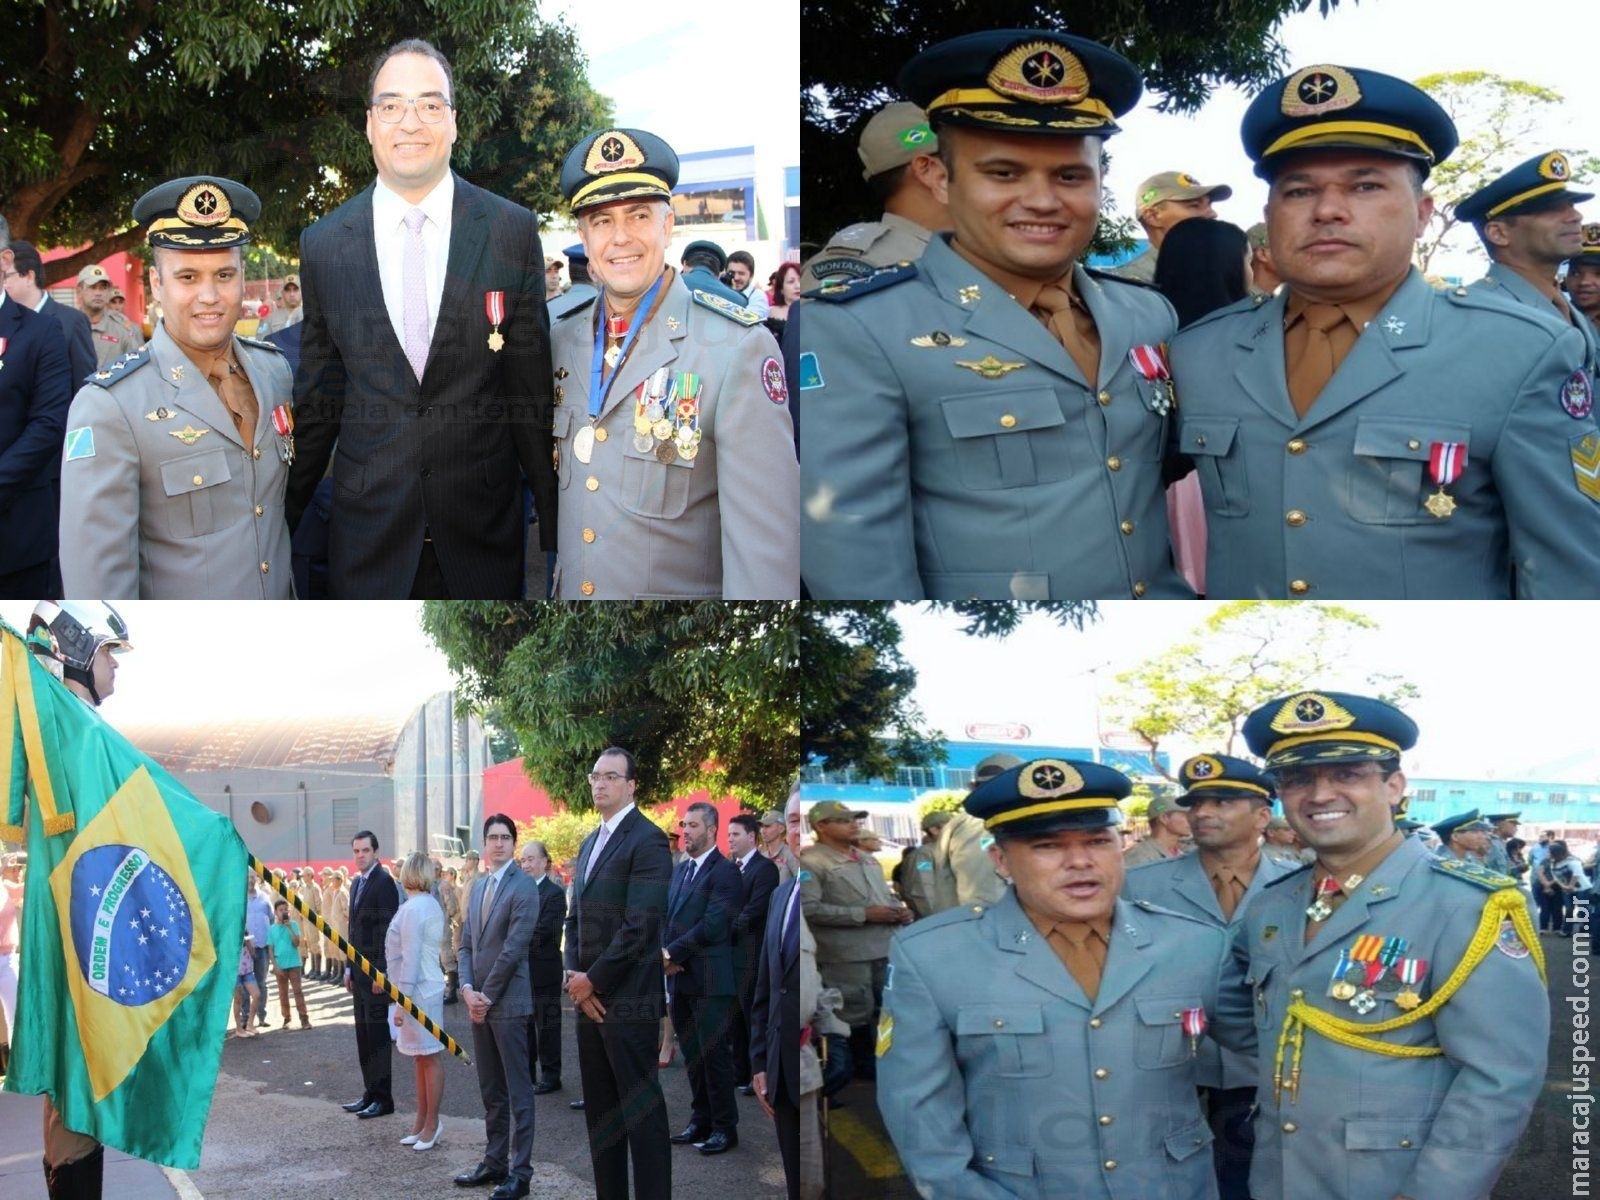 Maracaju: Sargento Geilson e Promotor Dr. Estefano são agraciados com Medalha Imperador Dom Pedro II